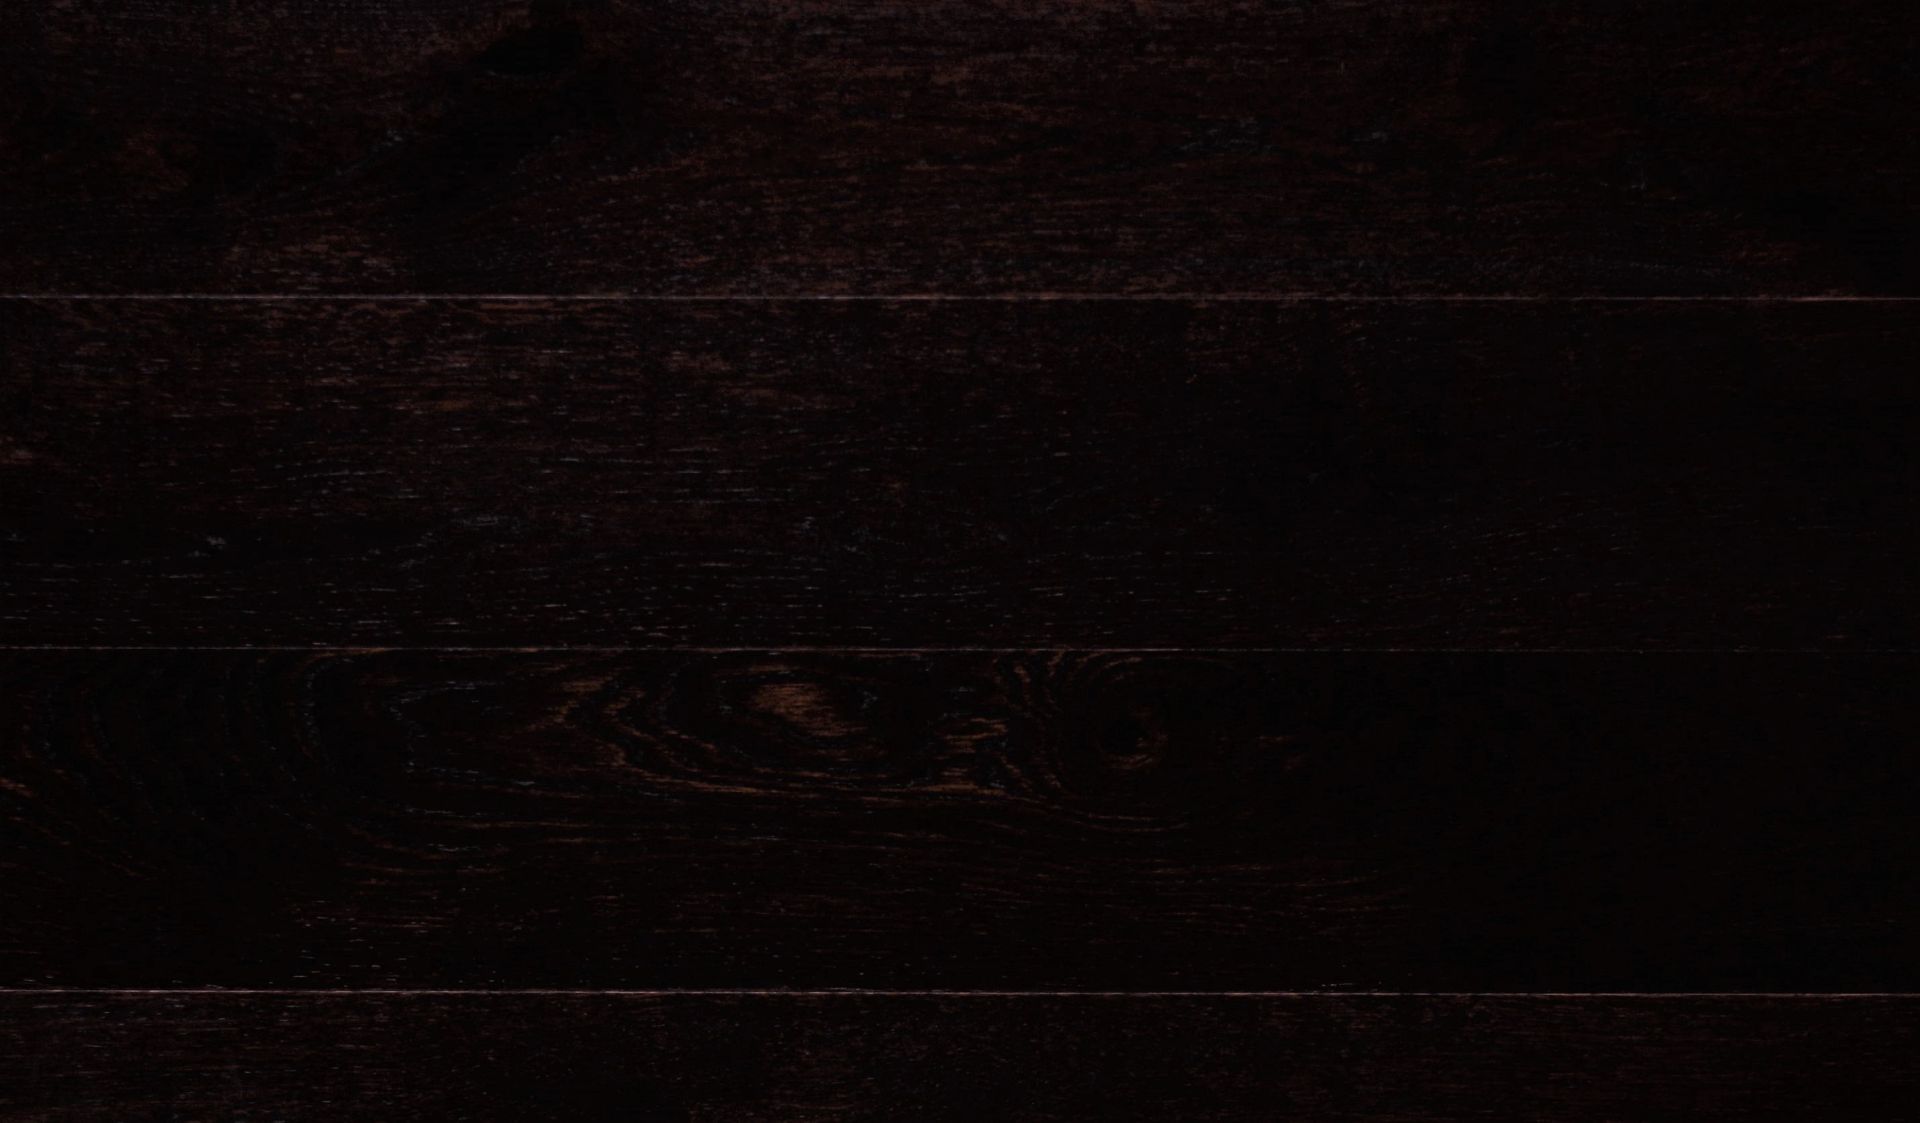 Oak engineered wood flooring "Conker" 28 packs, 102.56sqm - Image 2 of 3